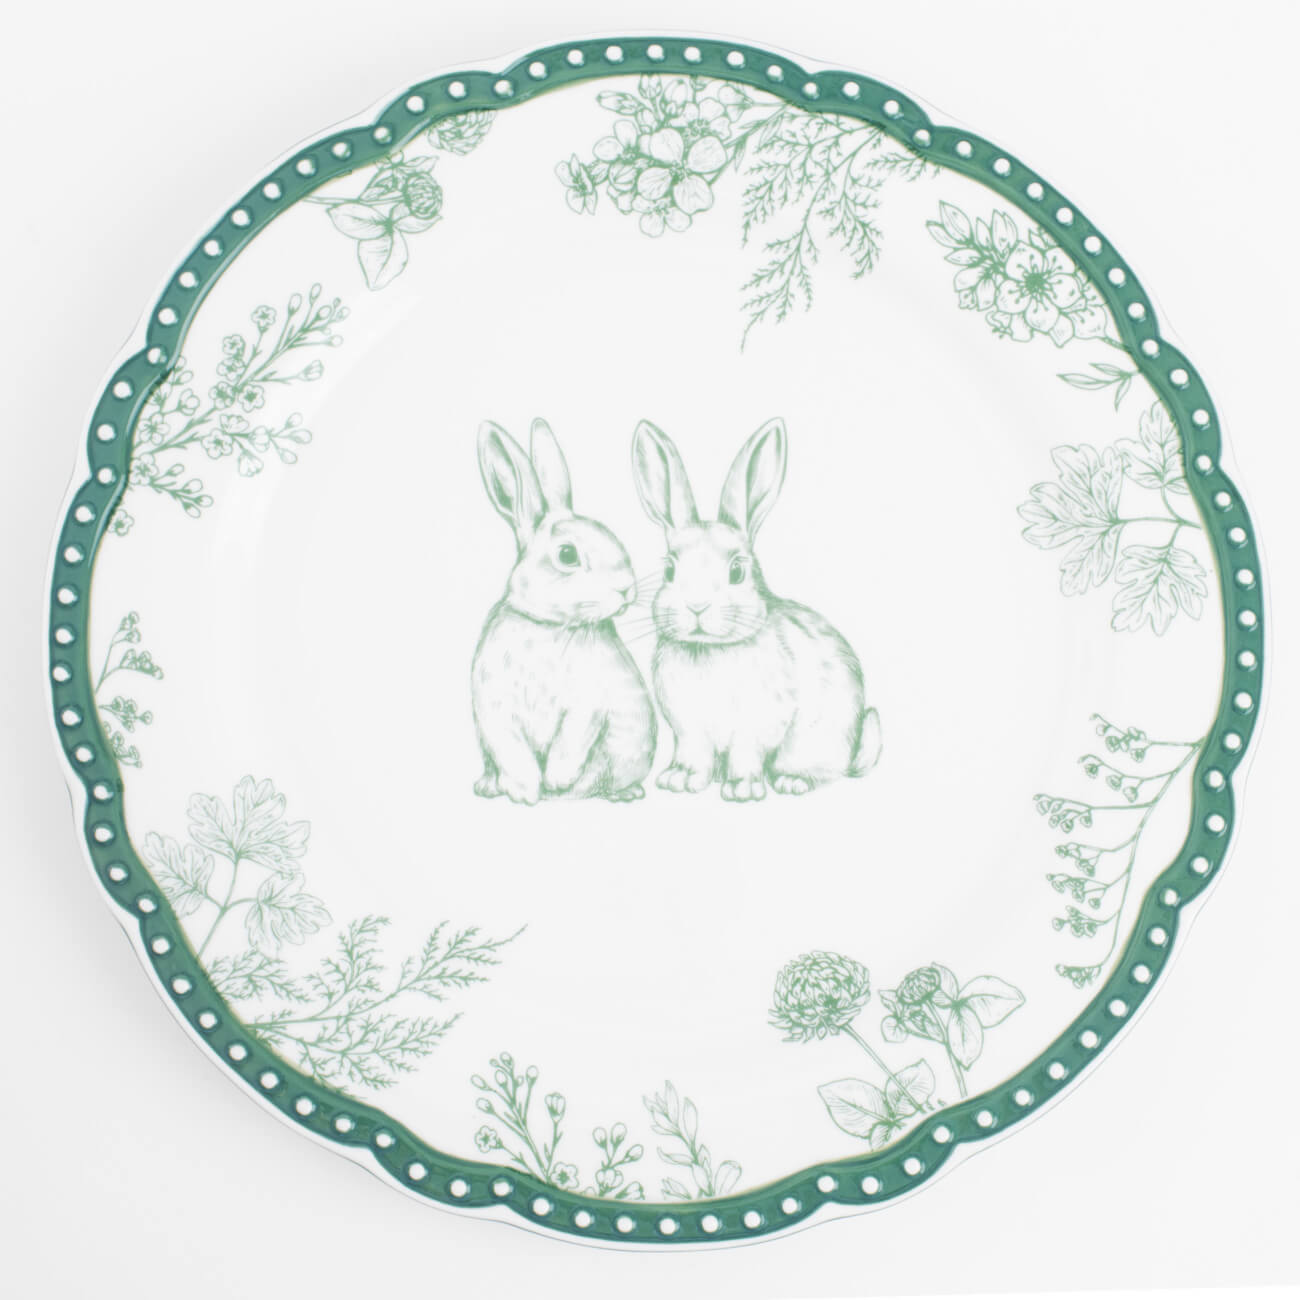 Тарелка обеденная, 27 см, керамика, бело-зеленая, Кролики и цветы, Easter blooming - фото 1